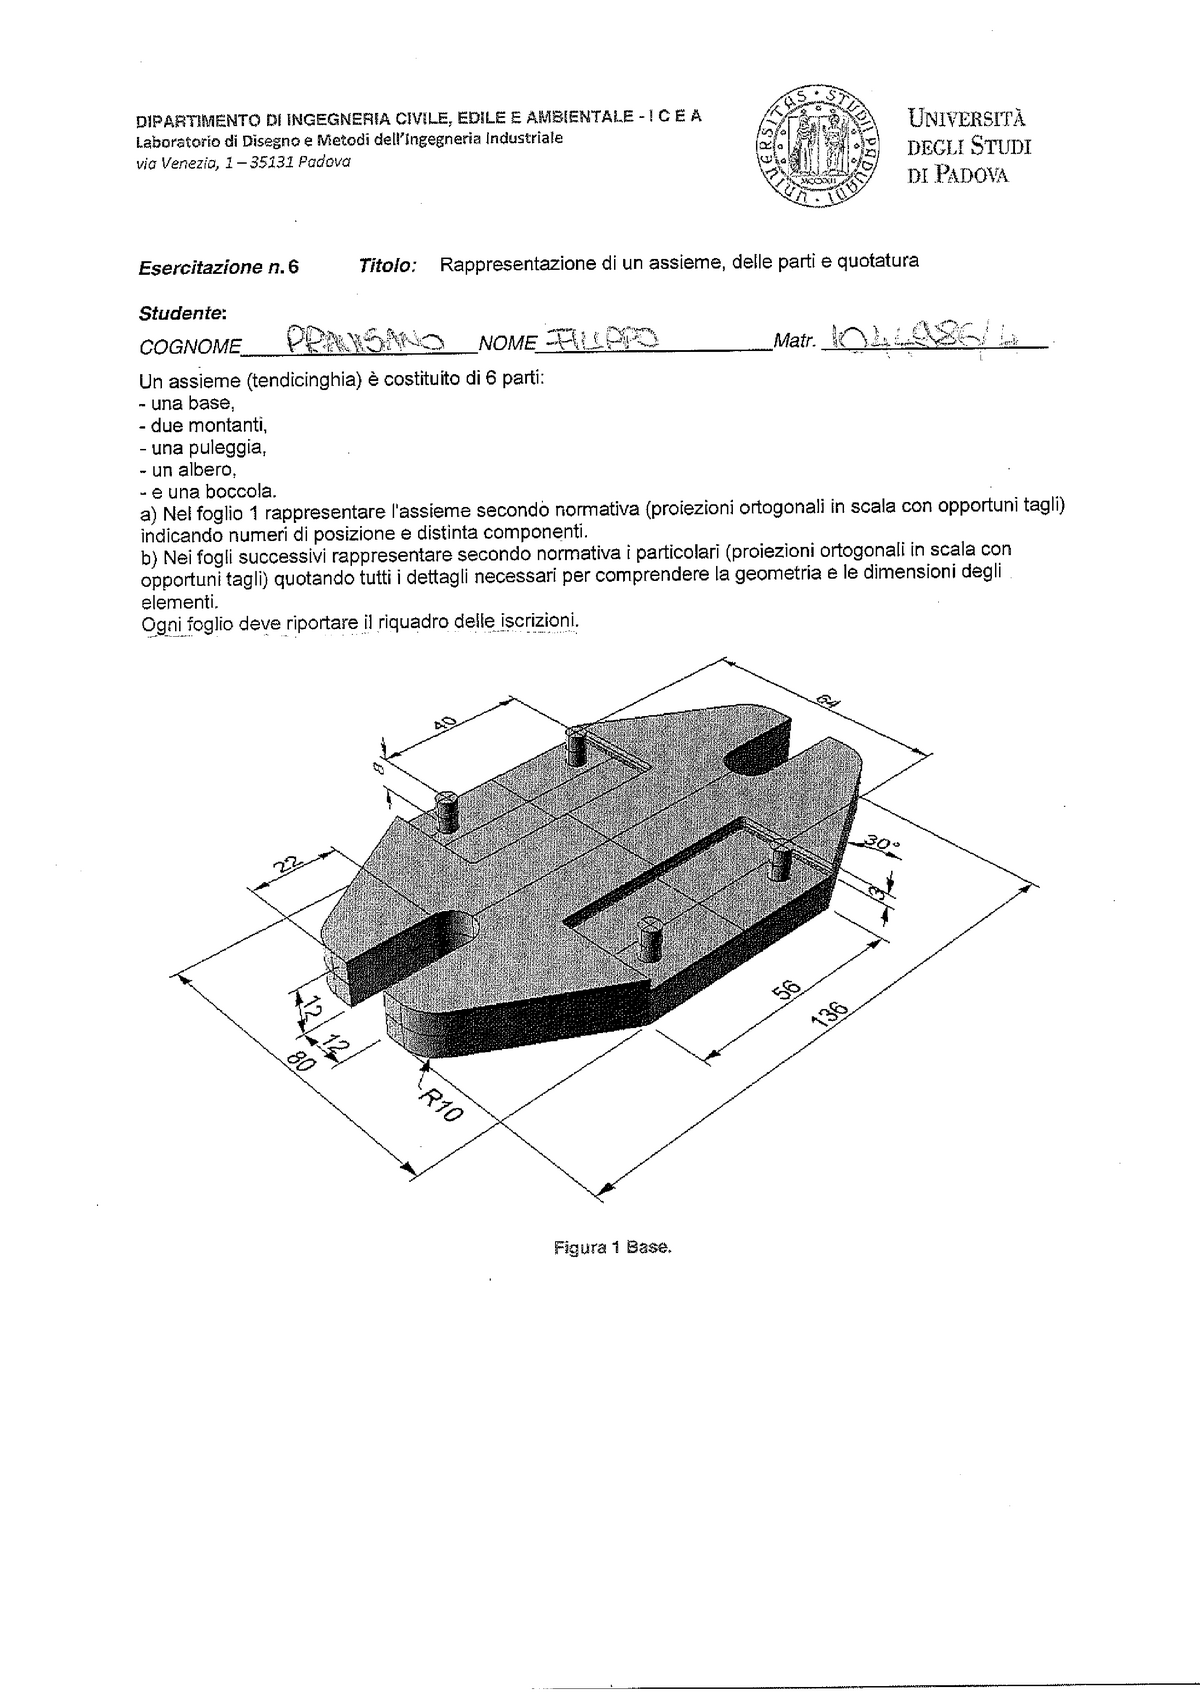 Disegno tecnico industriale chirone tornincasa pdf